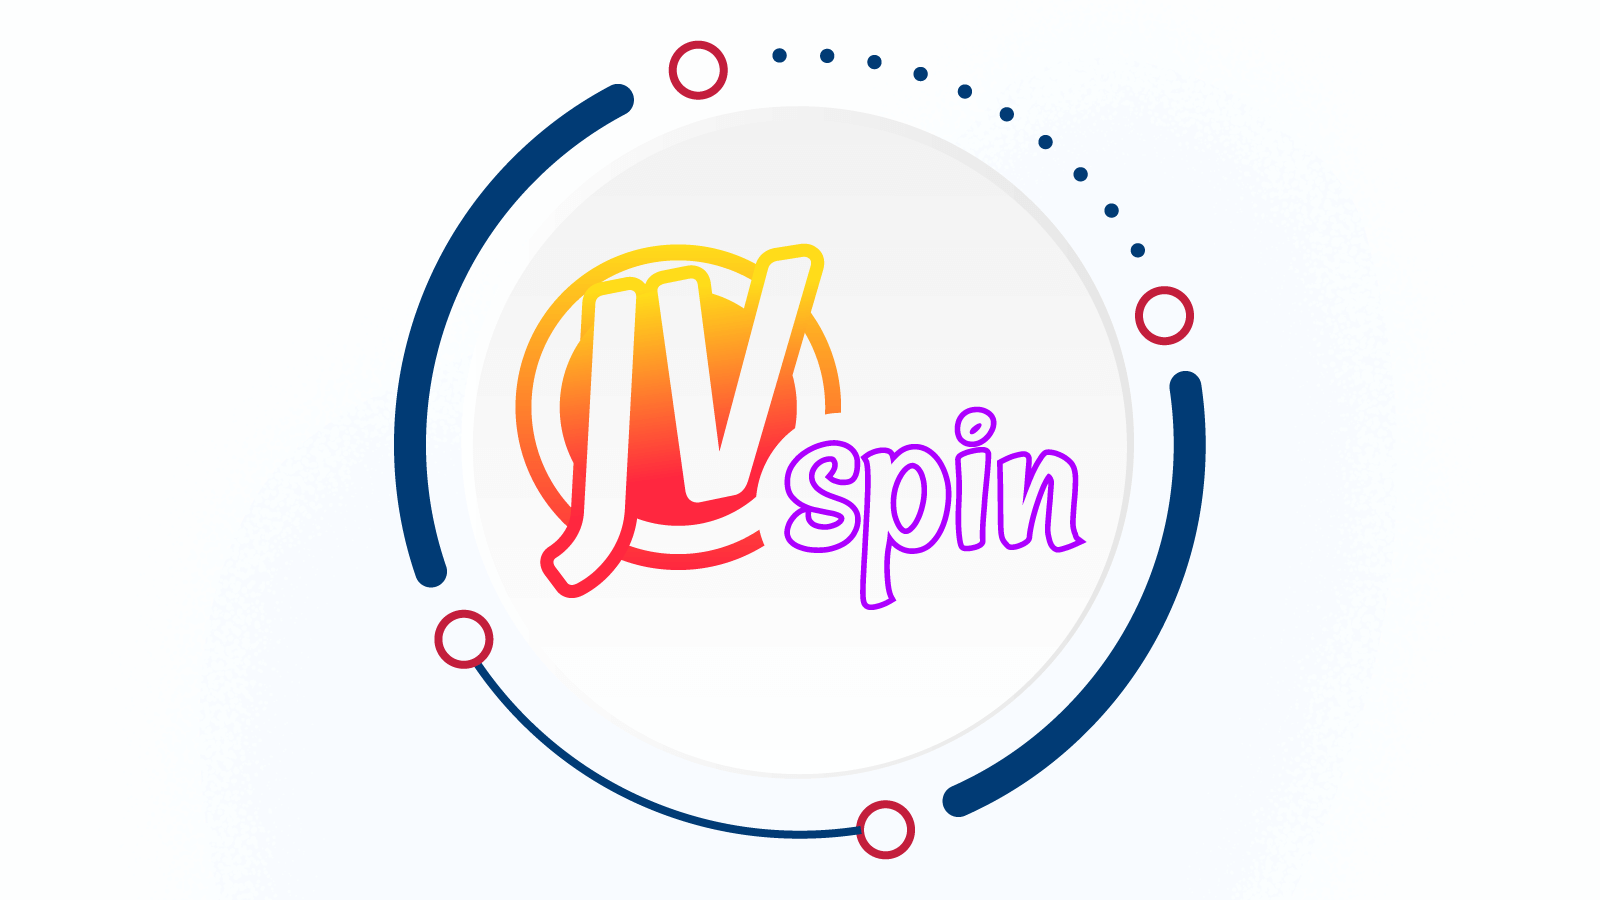 JV Spin Casino